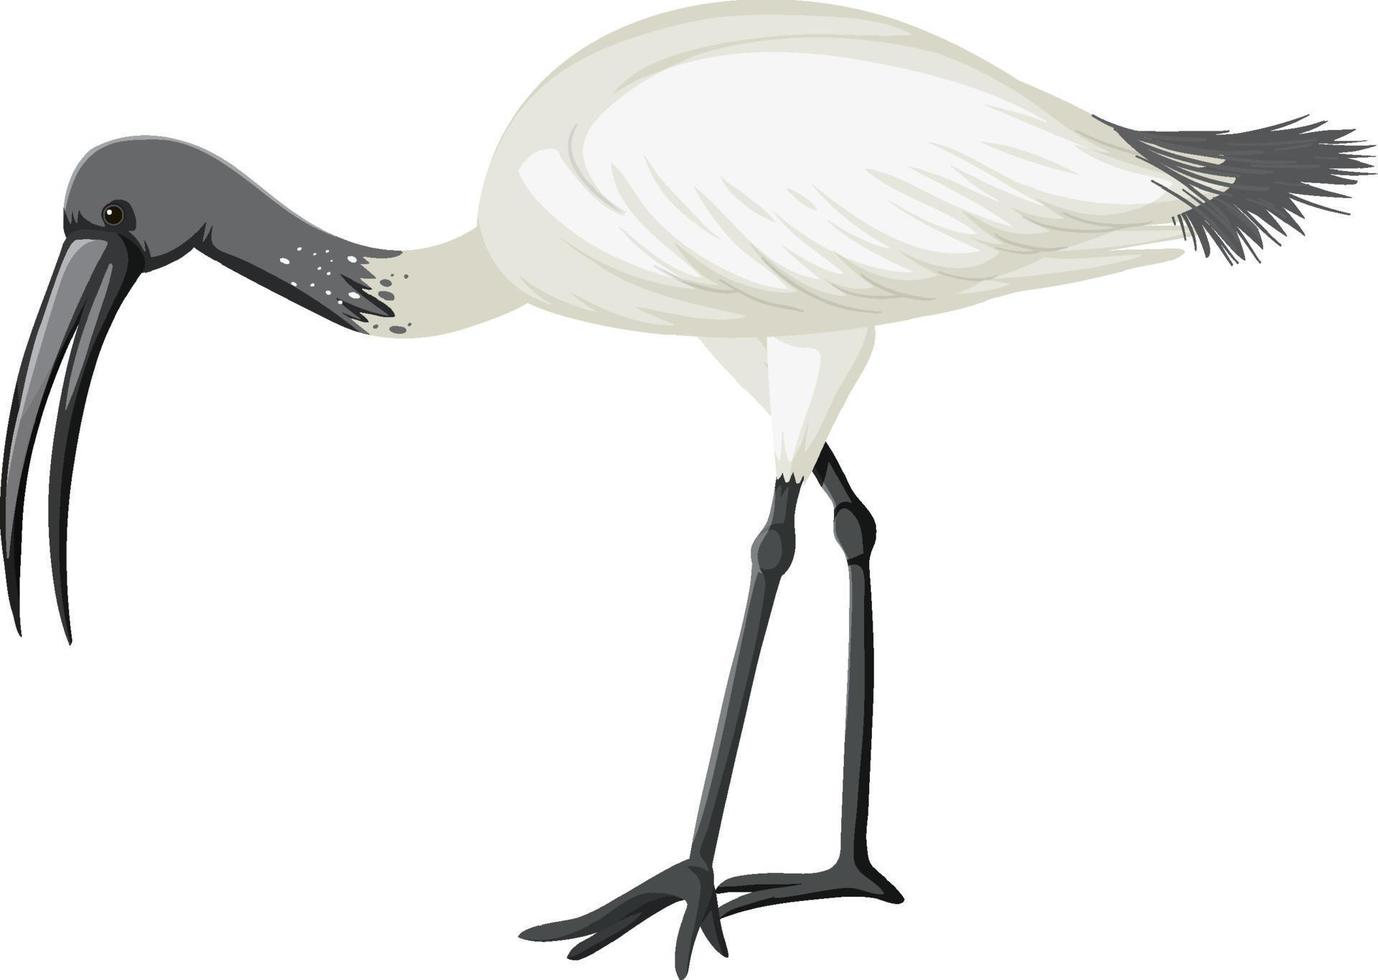 australischer weißer ibis isoliert vektor